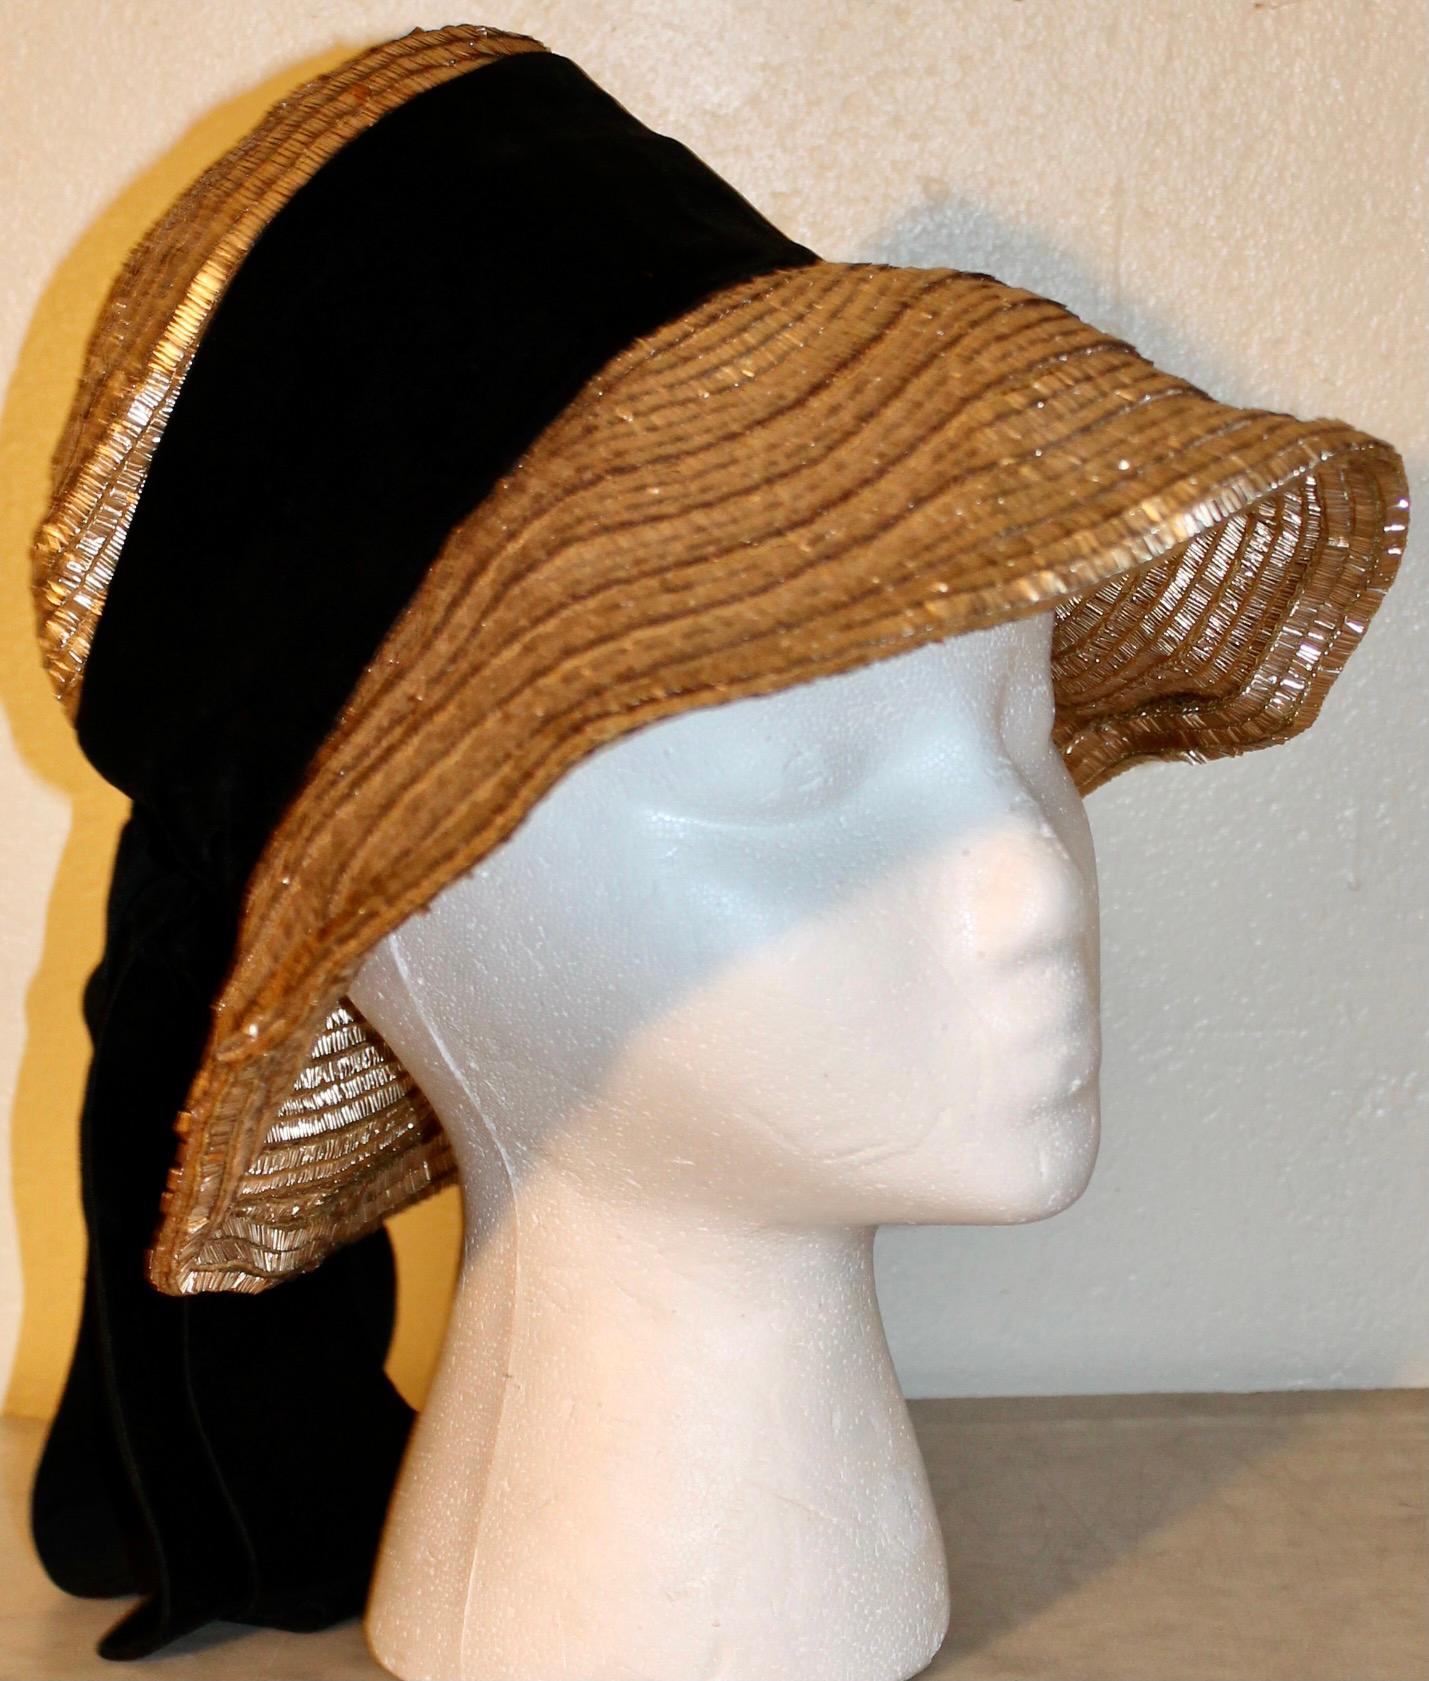 J'offre un chapeau original de Gerard d'Albouy (1912-1985) en laiton tressé avec un ruban de velours attaché.  Le modiste parisien, pendant l'occupation allemande (actif de 1938 à 1964), était connu pour ses utilisations passionnantes et originales